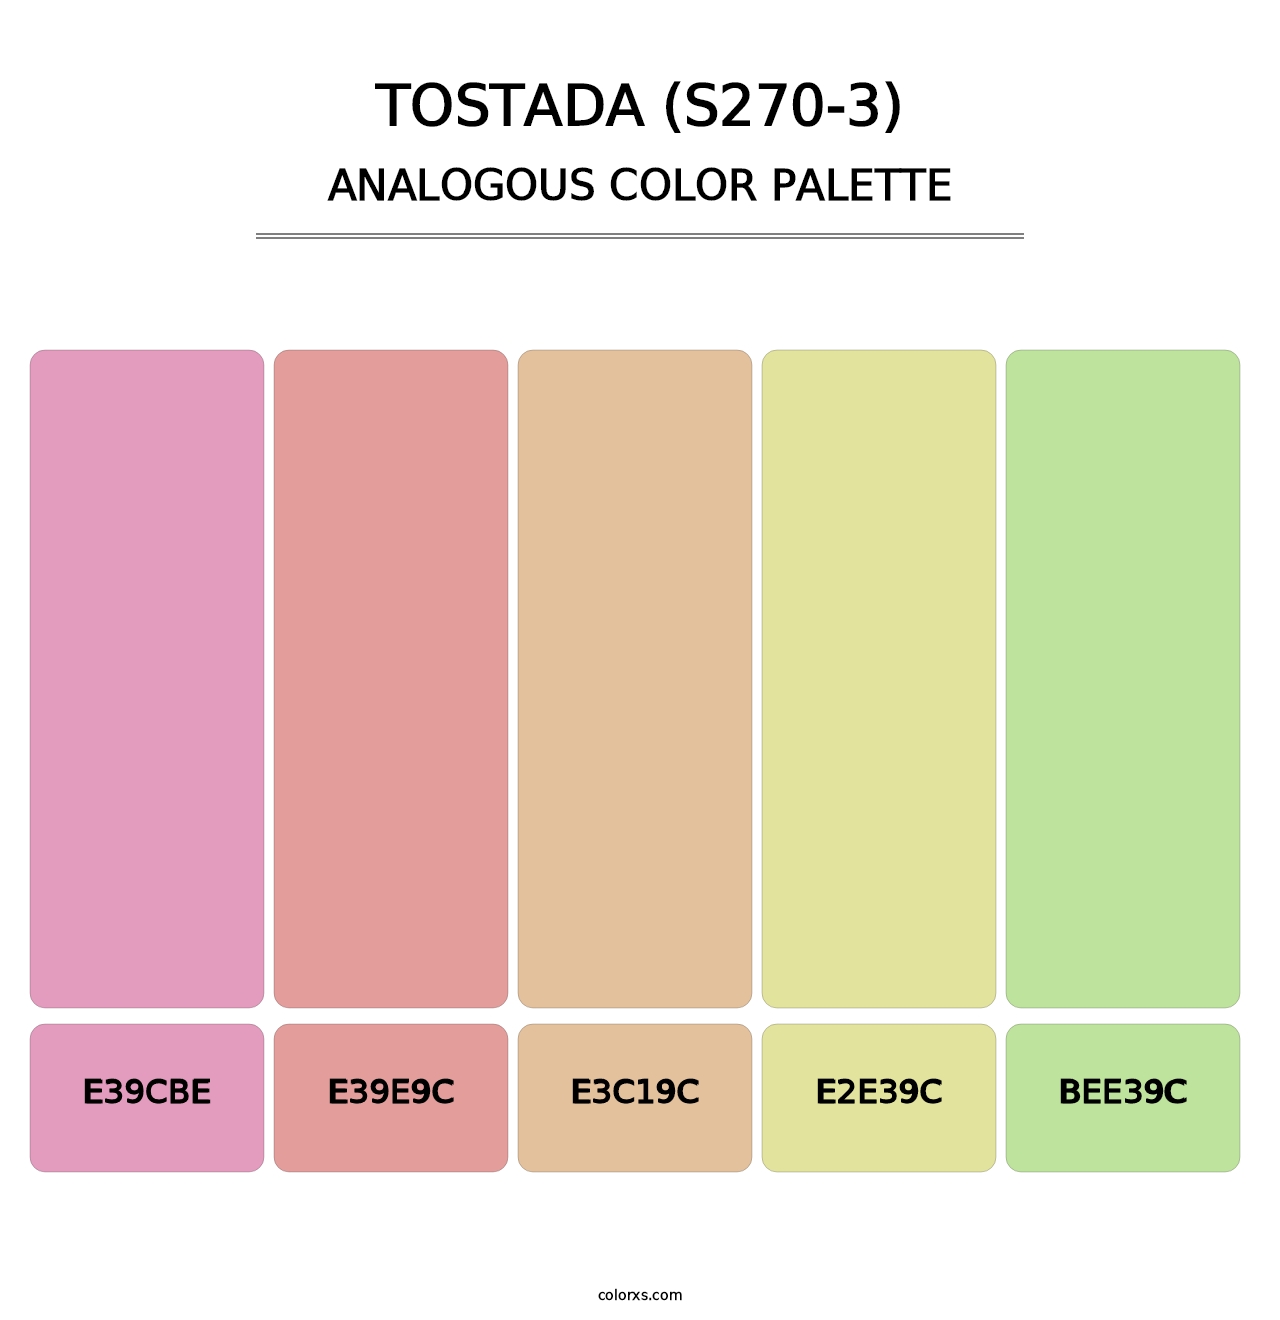 Tostada (S270-3) - Analogous Color Palette